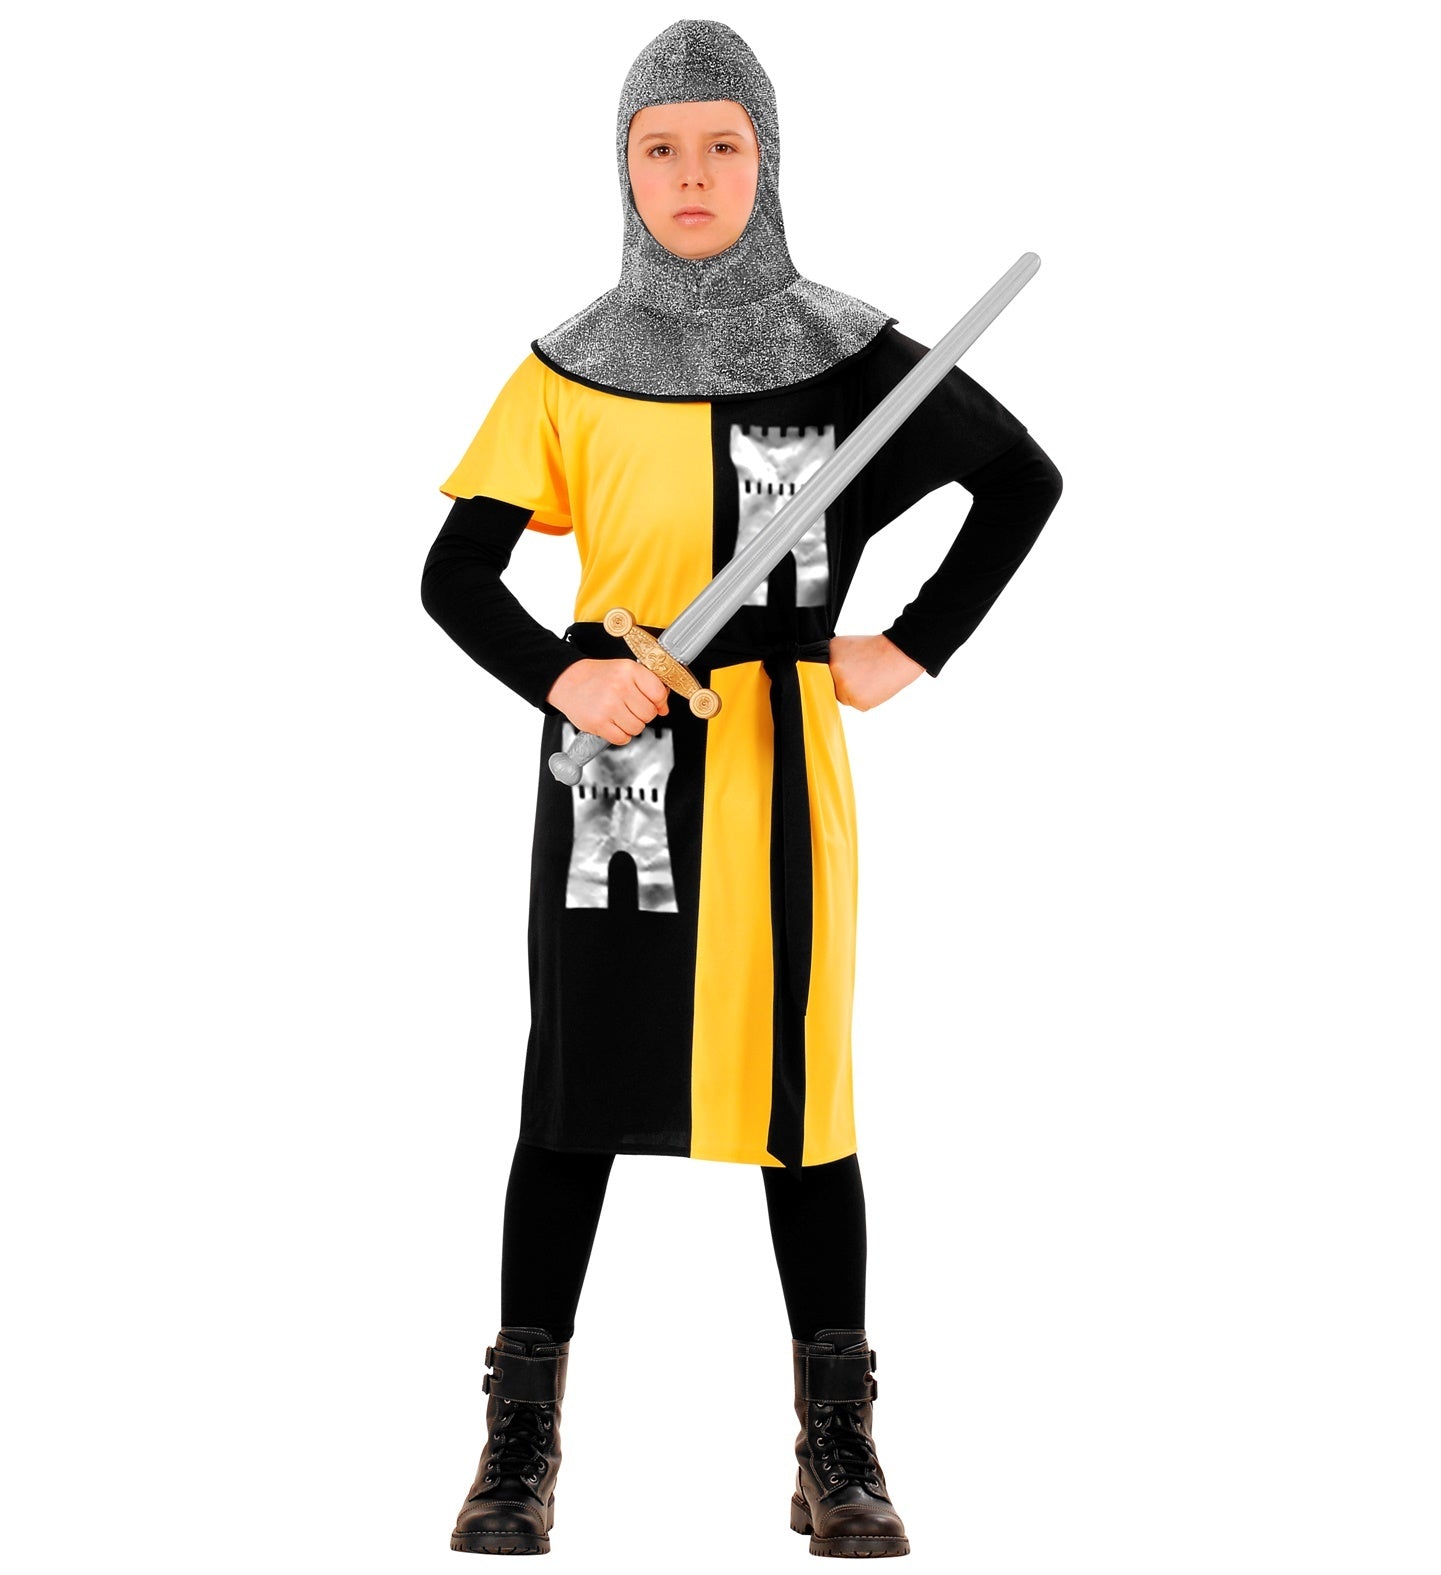 Widmann - Middeleeuwse & Renaissance Strijders Kostuum - Jonge Middeleeuwse Ridder Van Het Geelkasteel - Jongen - geel,zwart,zilver - Maat 140 - Carnavalskleding - Verkleedkleding